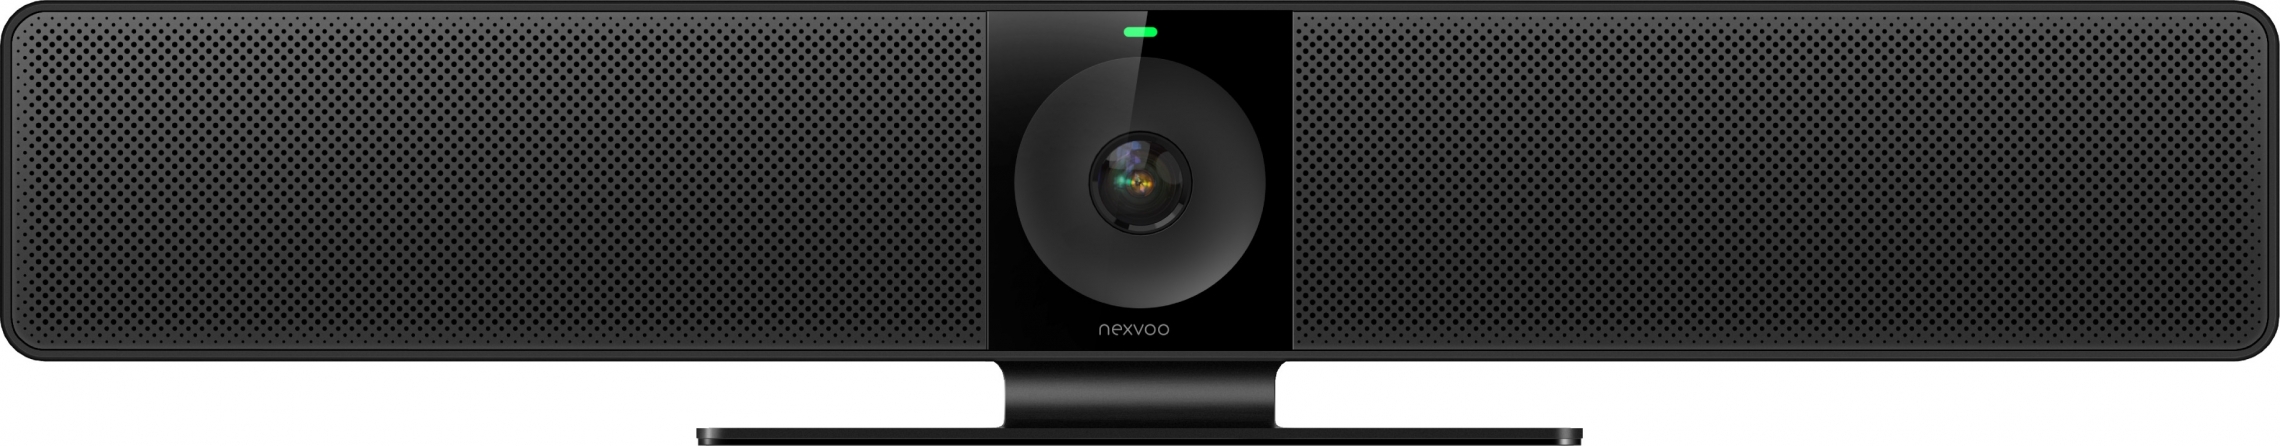 Videocamera professionale per videoconferenze Nexvoo NexBar N110 Ultra HD 4K con tracking AI del parlante e soundbar integrata (per ambienti medi e grandi)